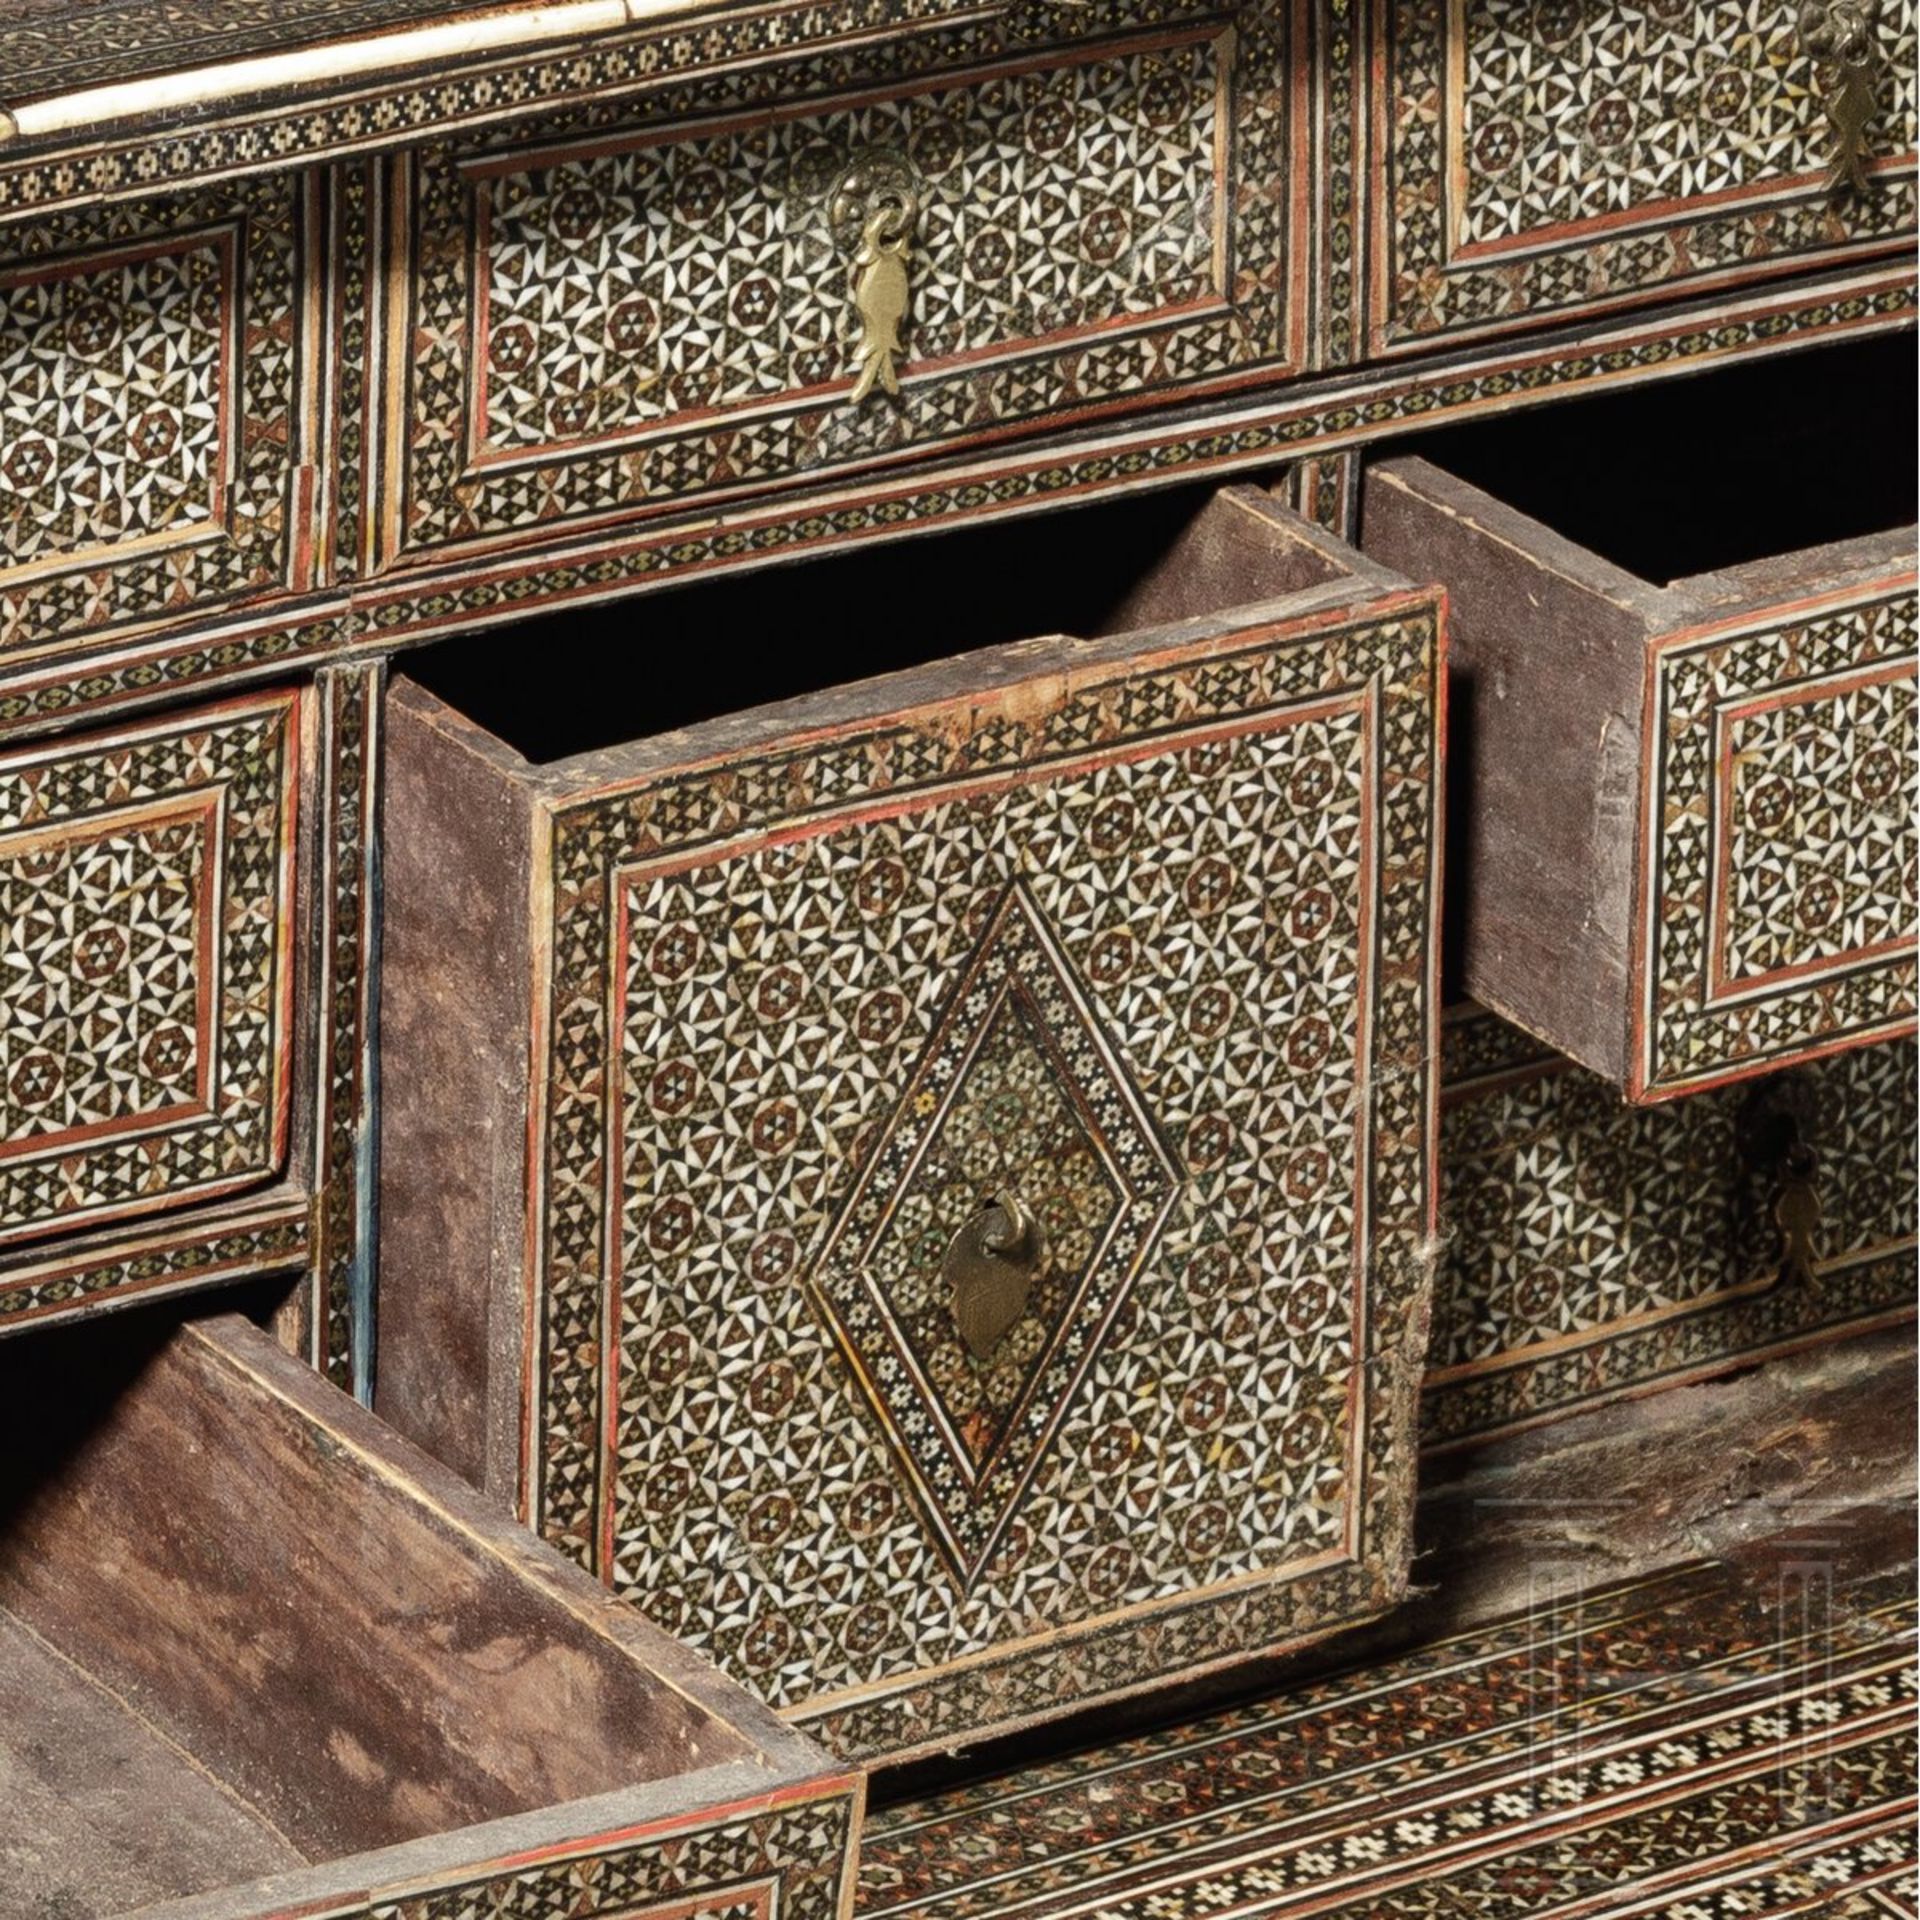 Kabinettkästchen mit reichem Shiras-Dekor, Persien, 1. Hälfte 19. Jhdt. - Image 5 of 5